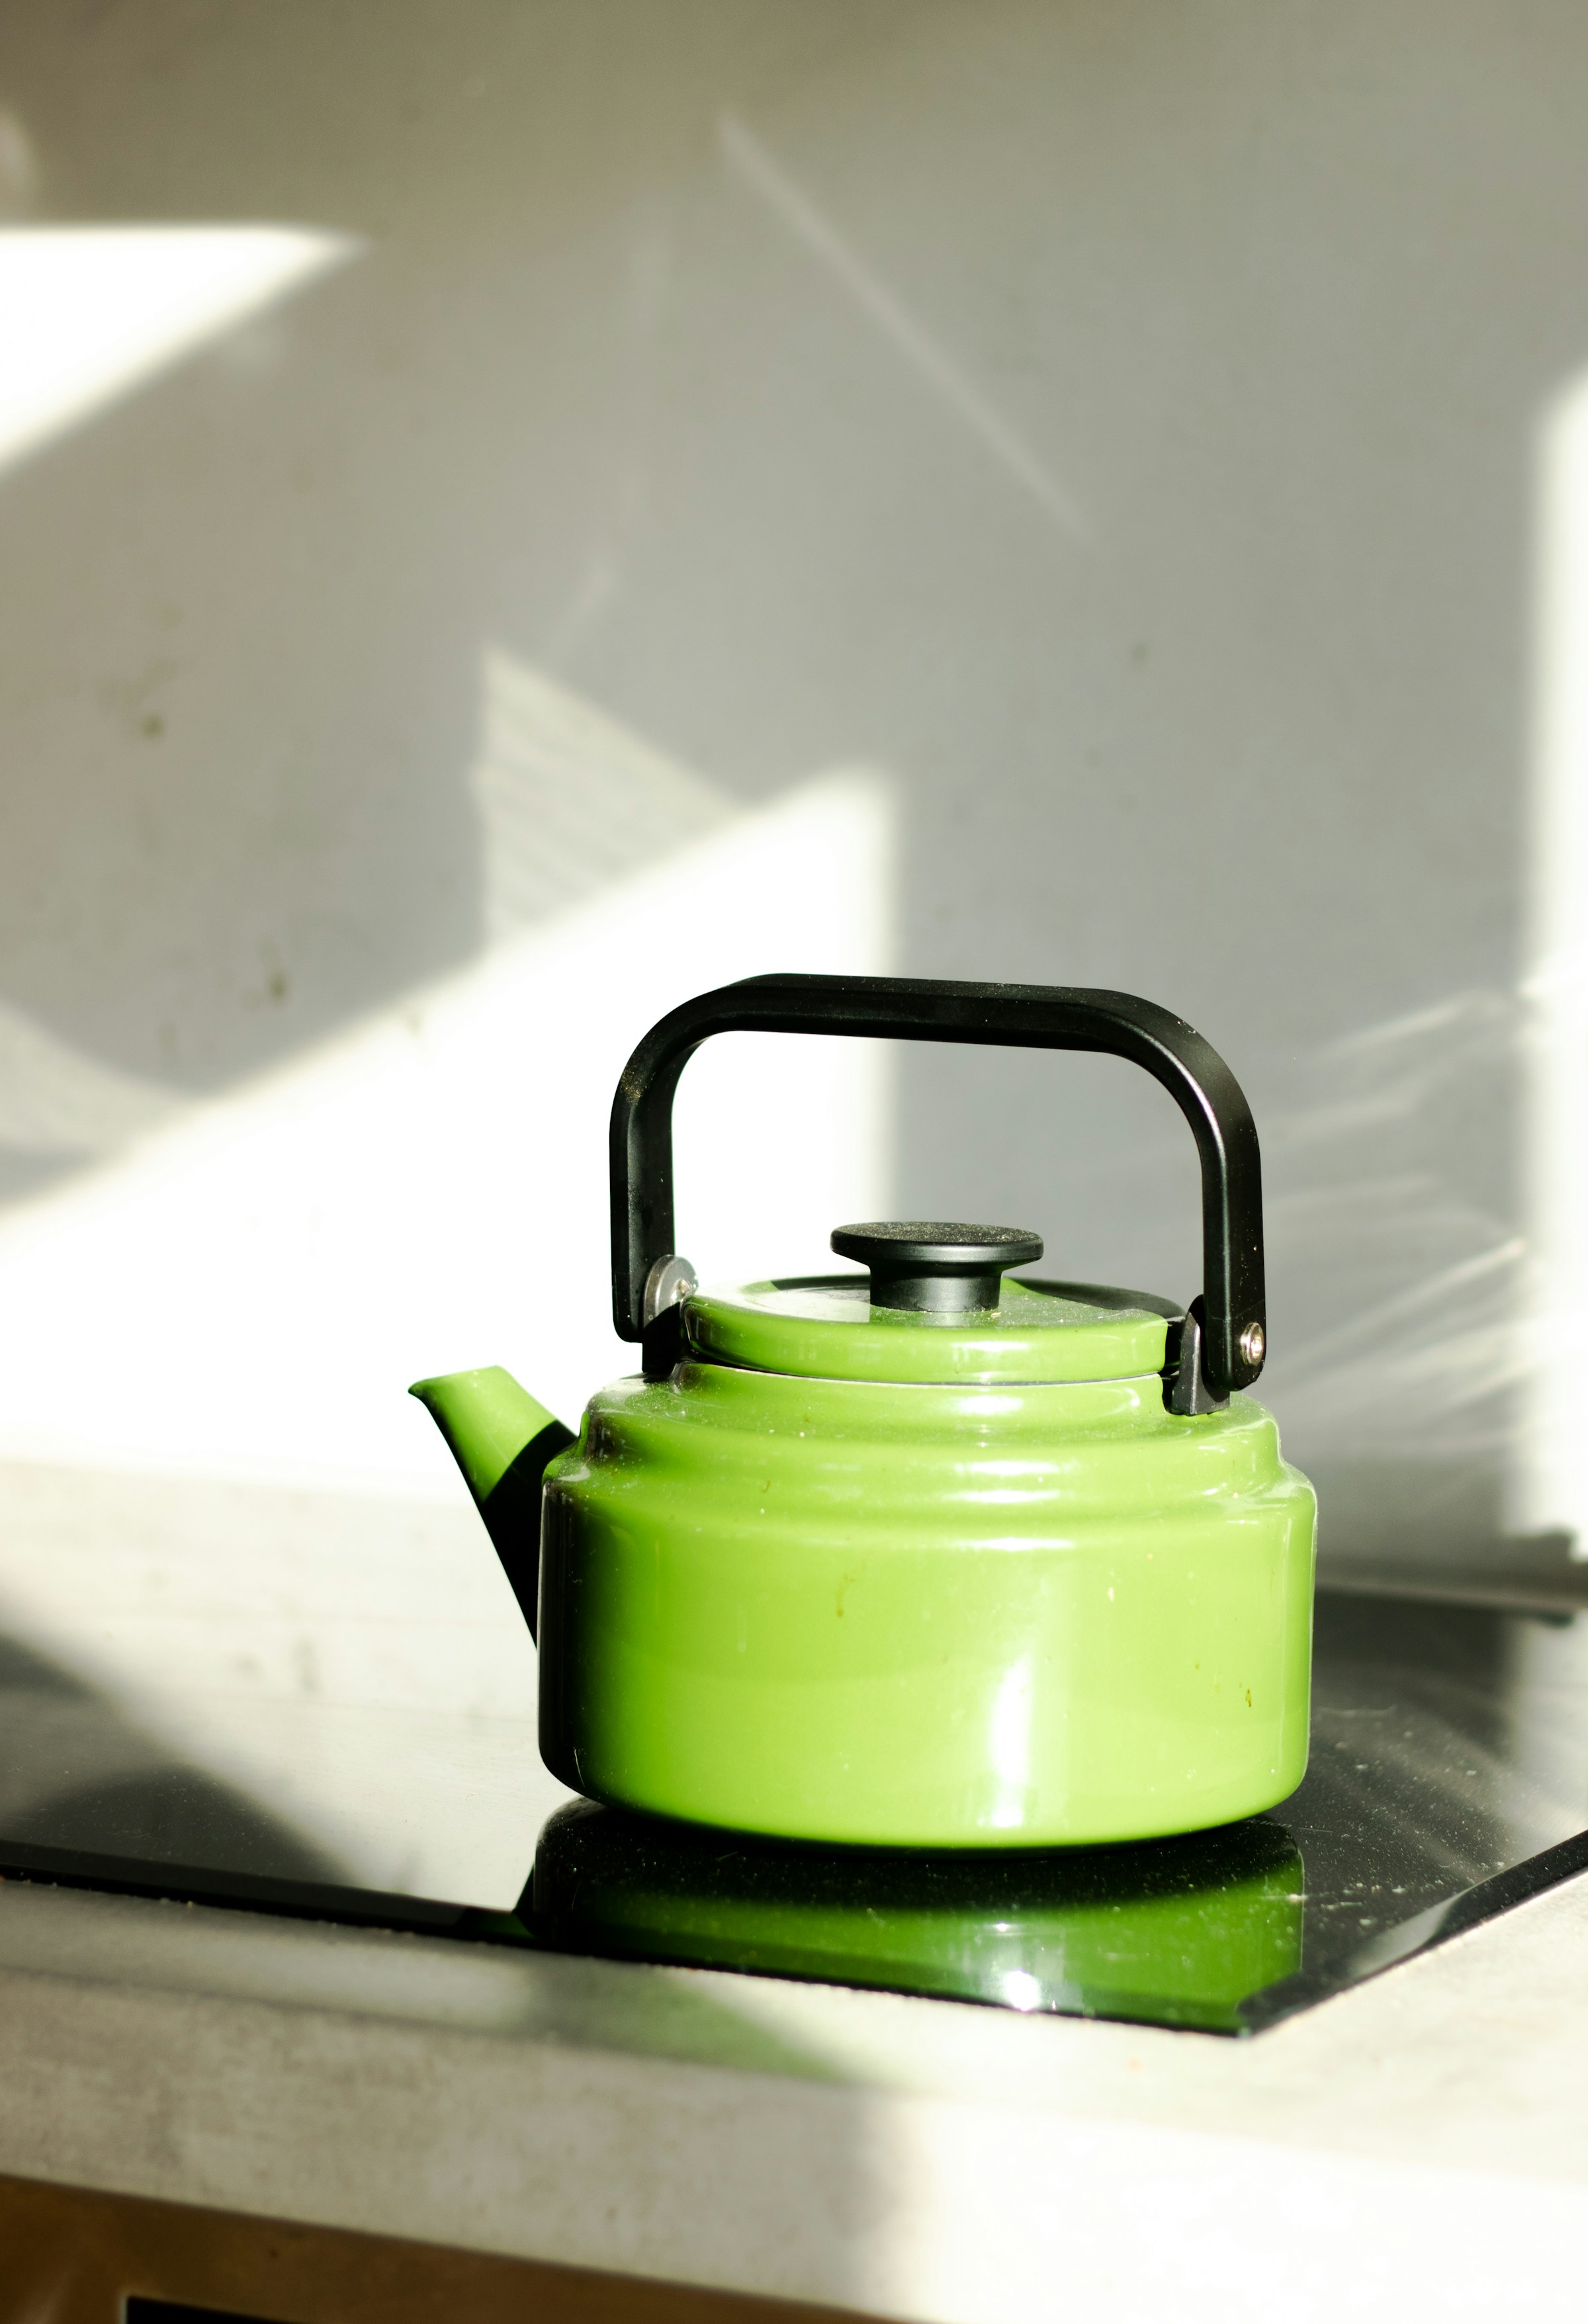 Ein grüner Teekessel auf dem Herd | Quelle: Unsplash